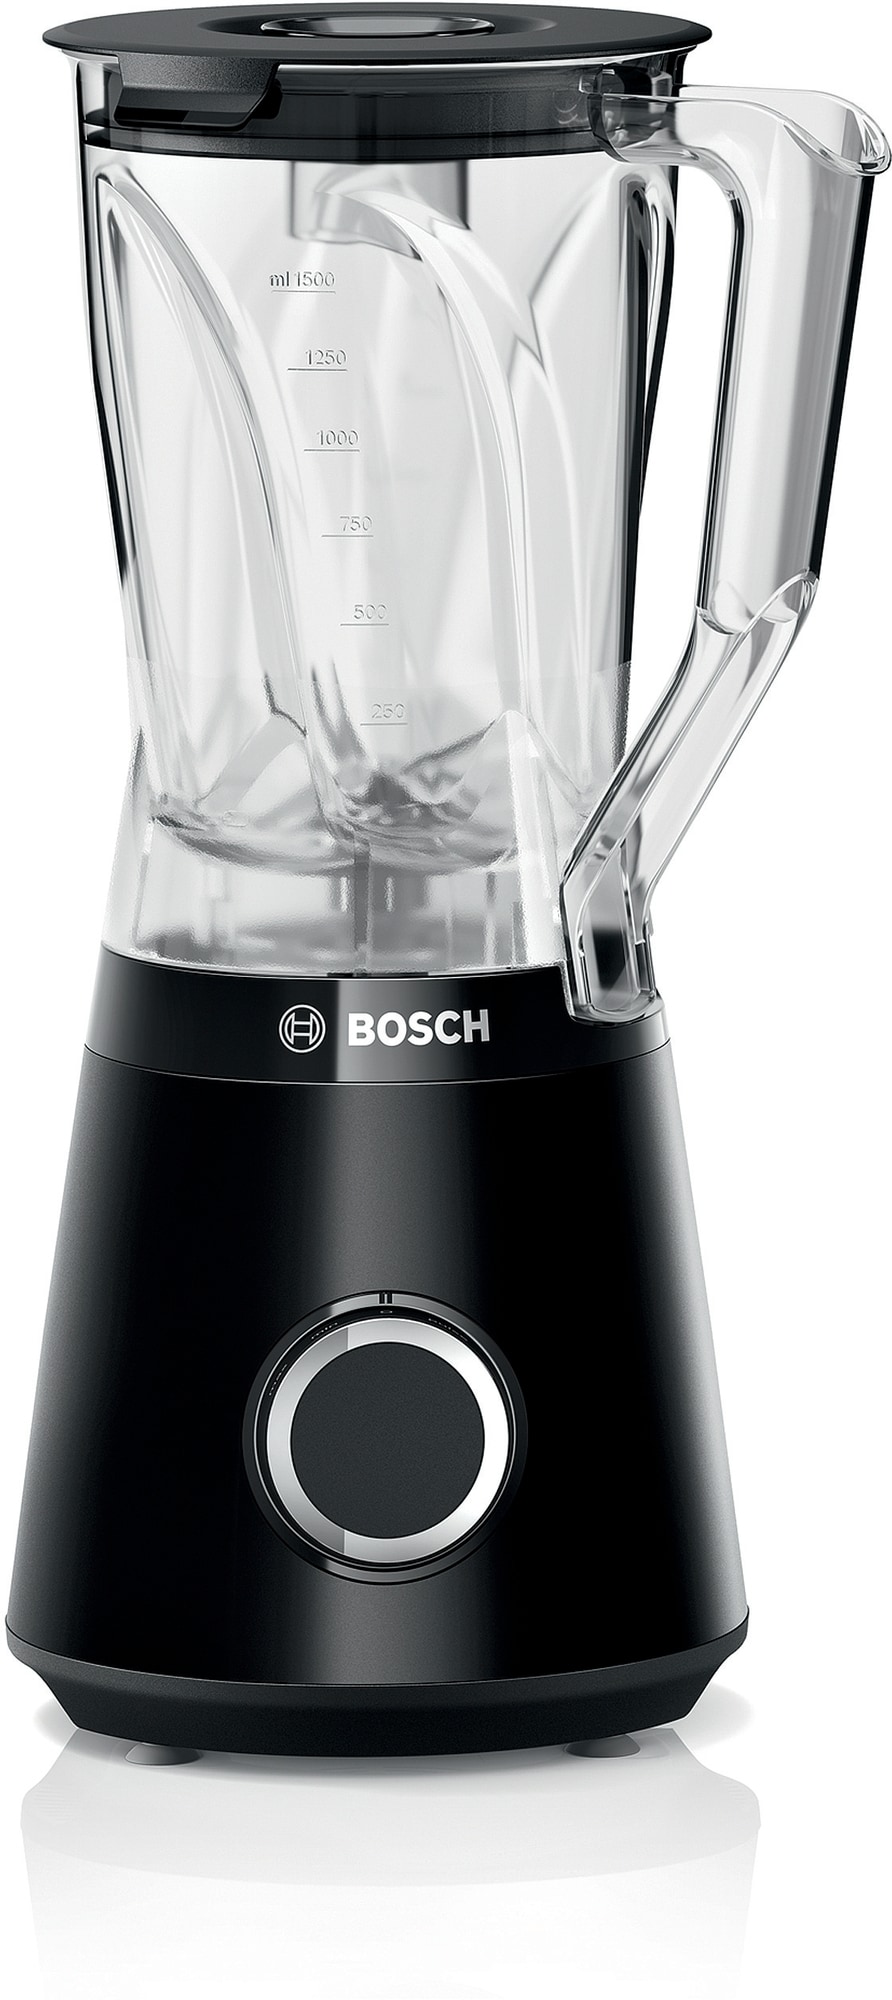 Bosch VitaPower blender MMB6141B (sort)